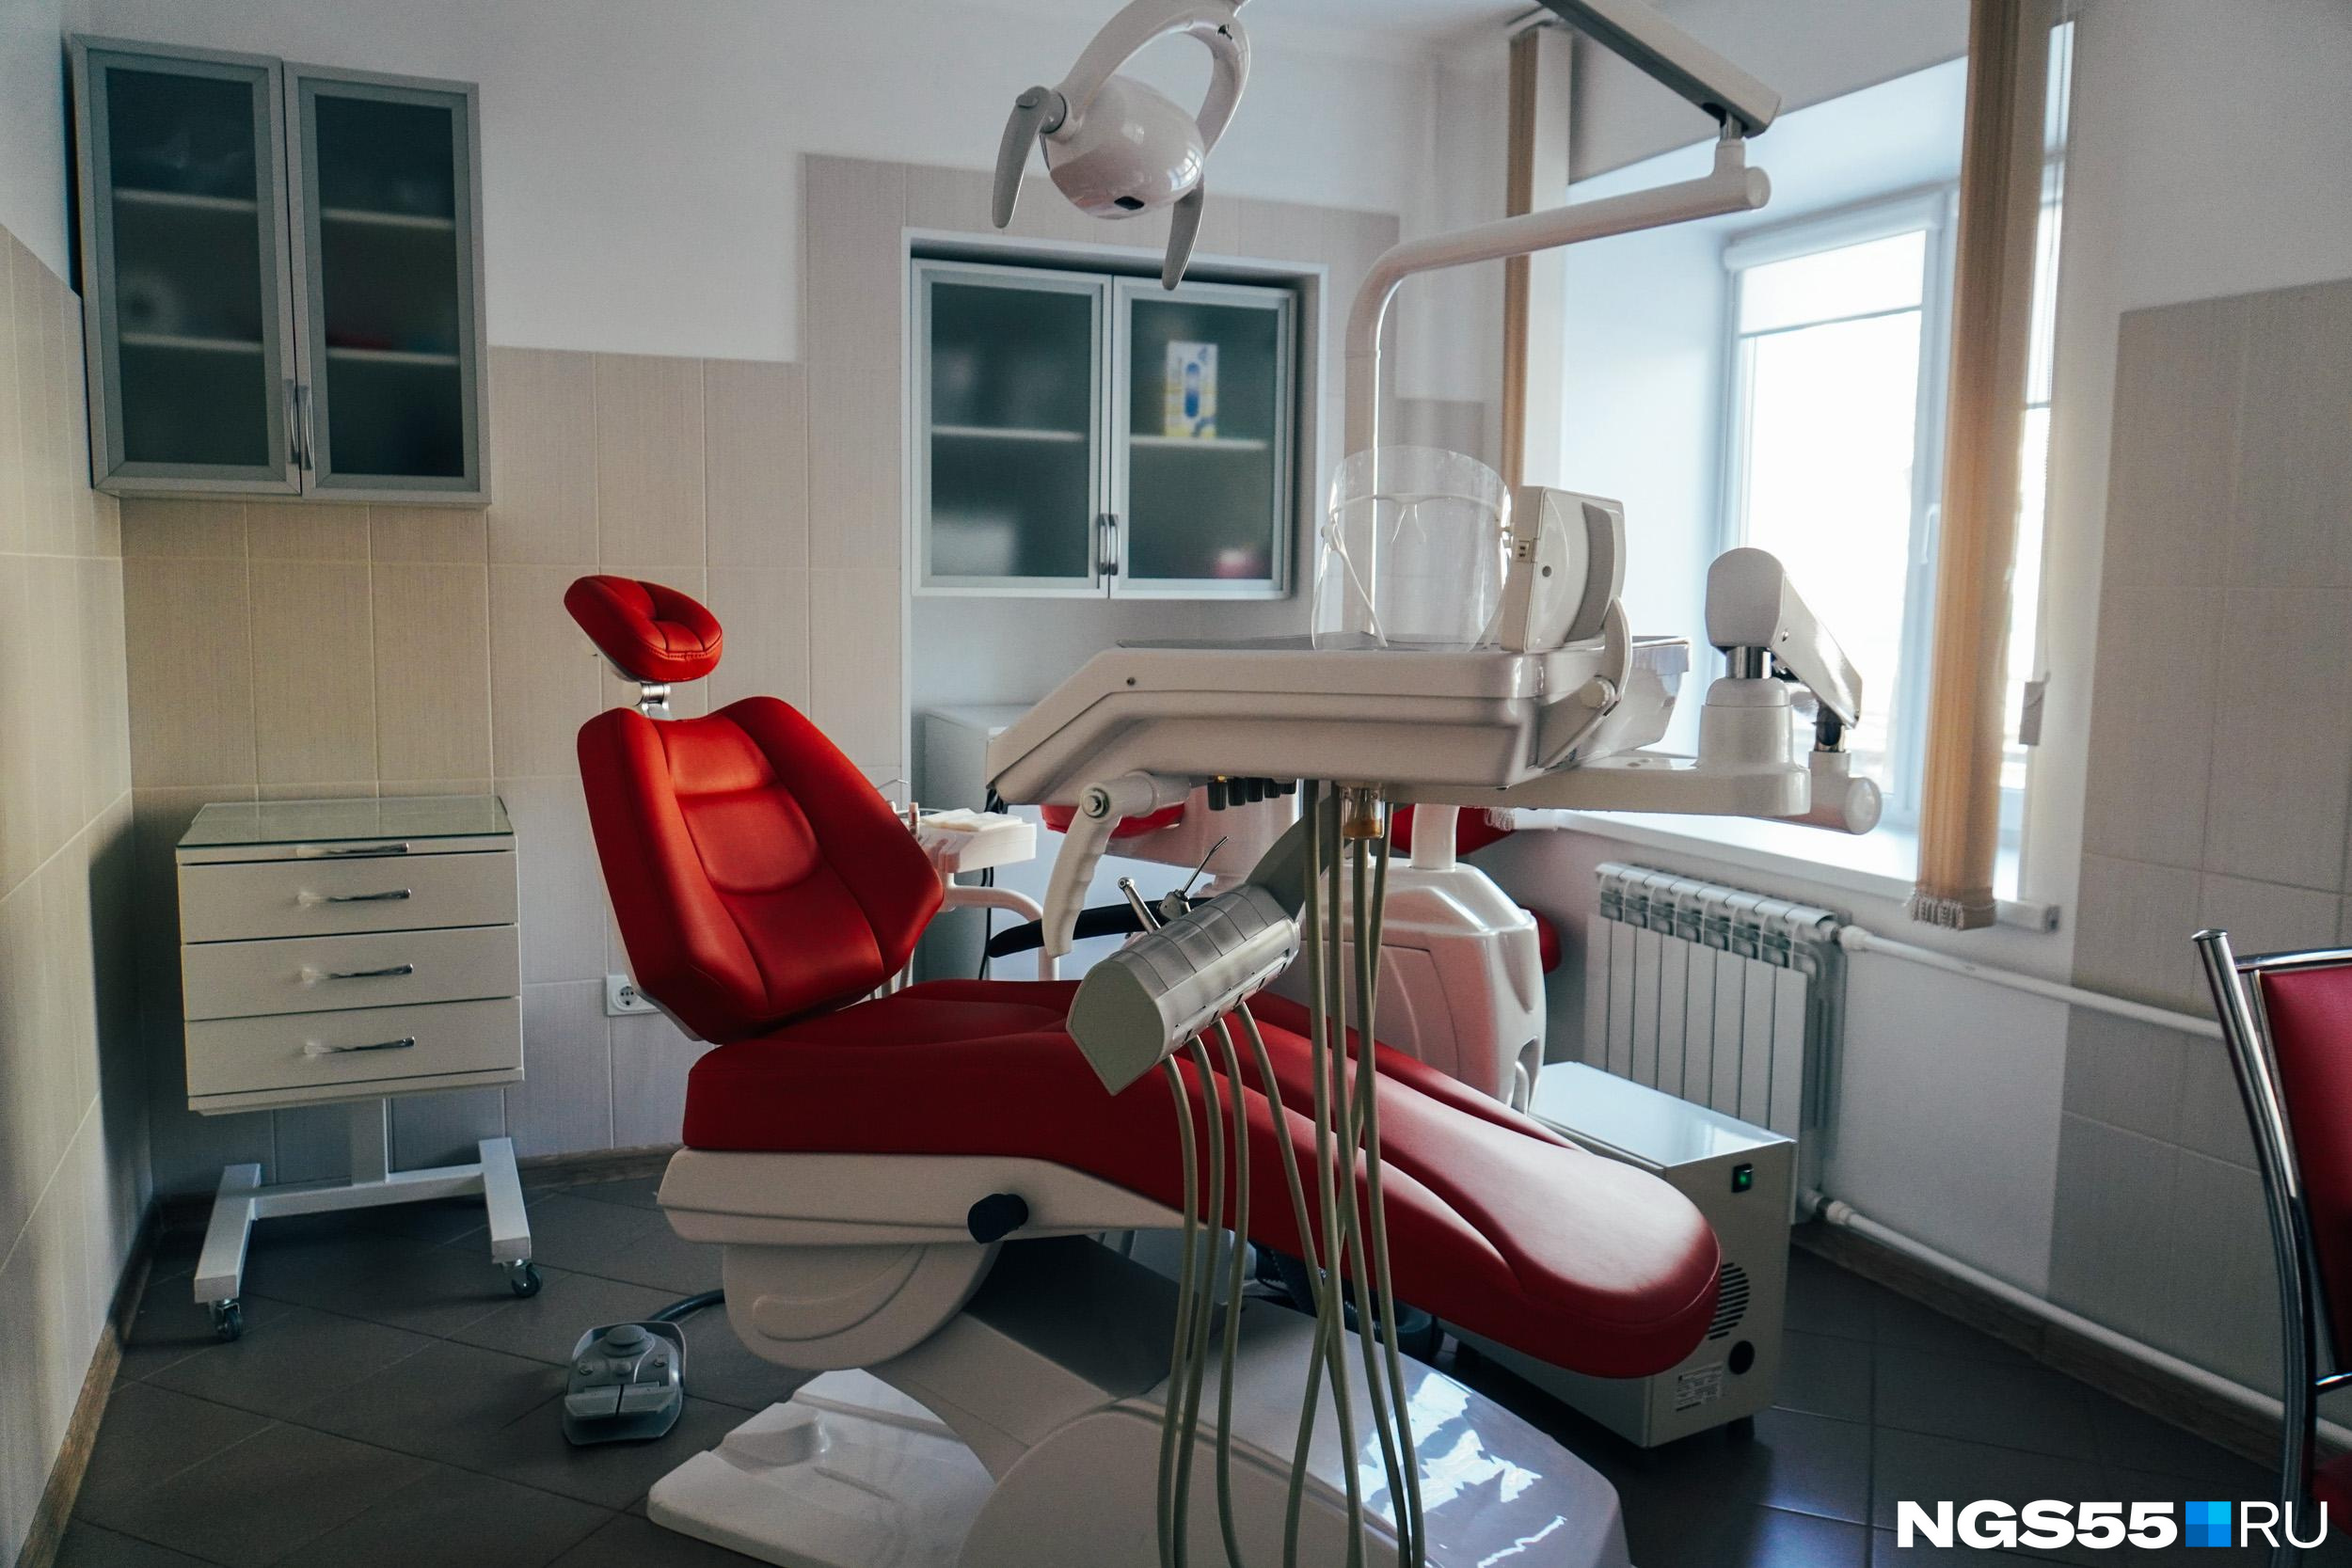 Омич отсудил у стоматологии почти миллион за сломанные корни зубов